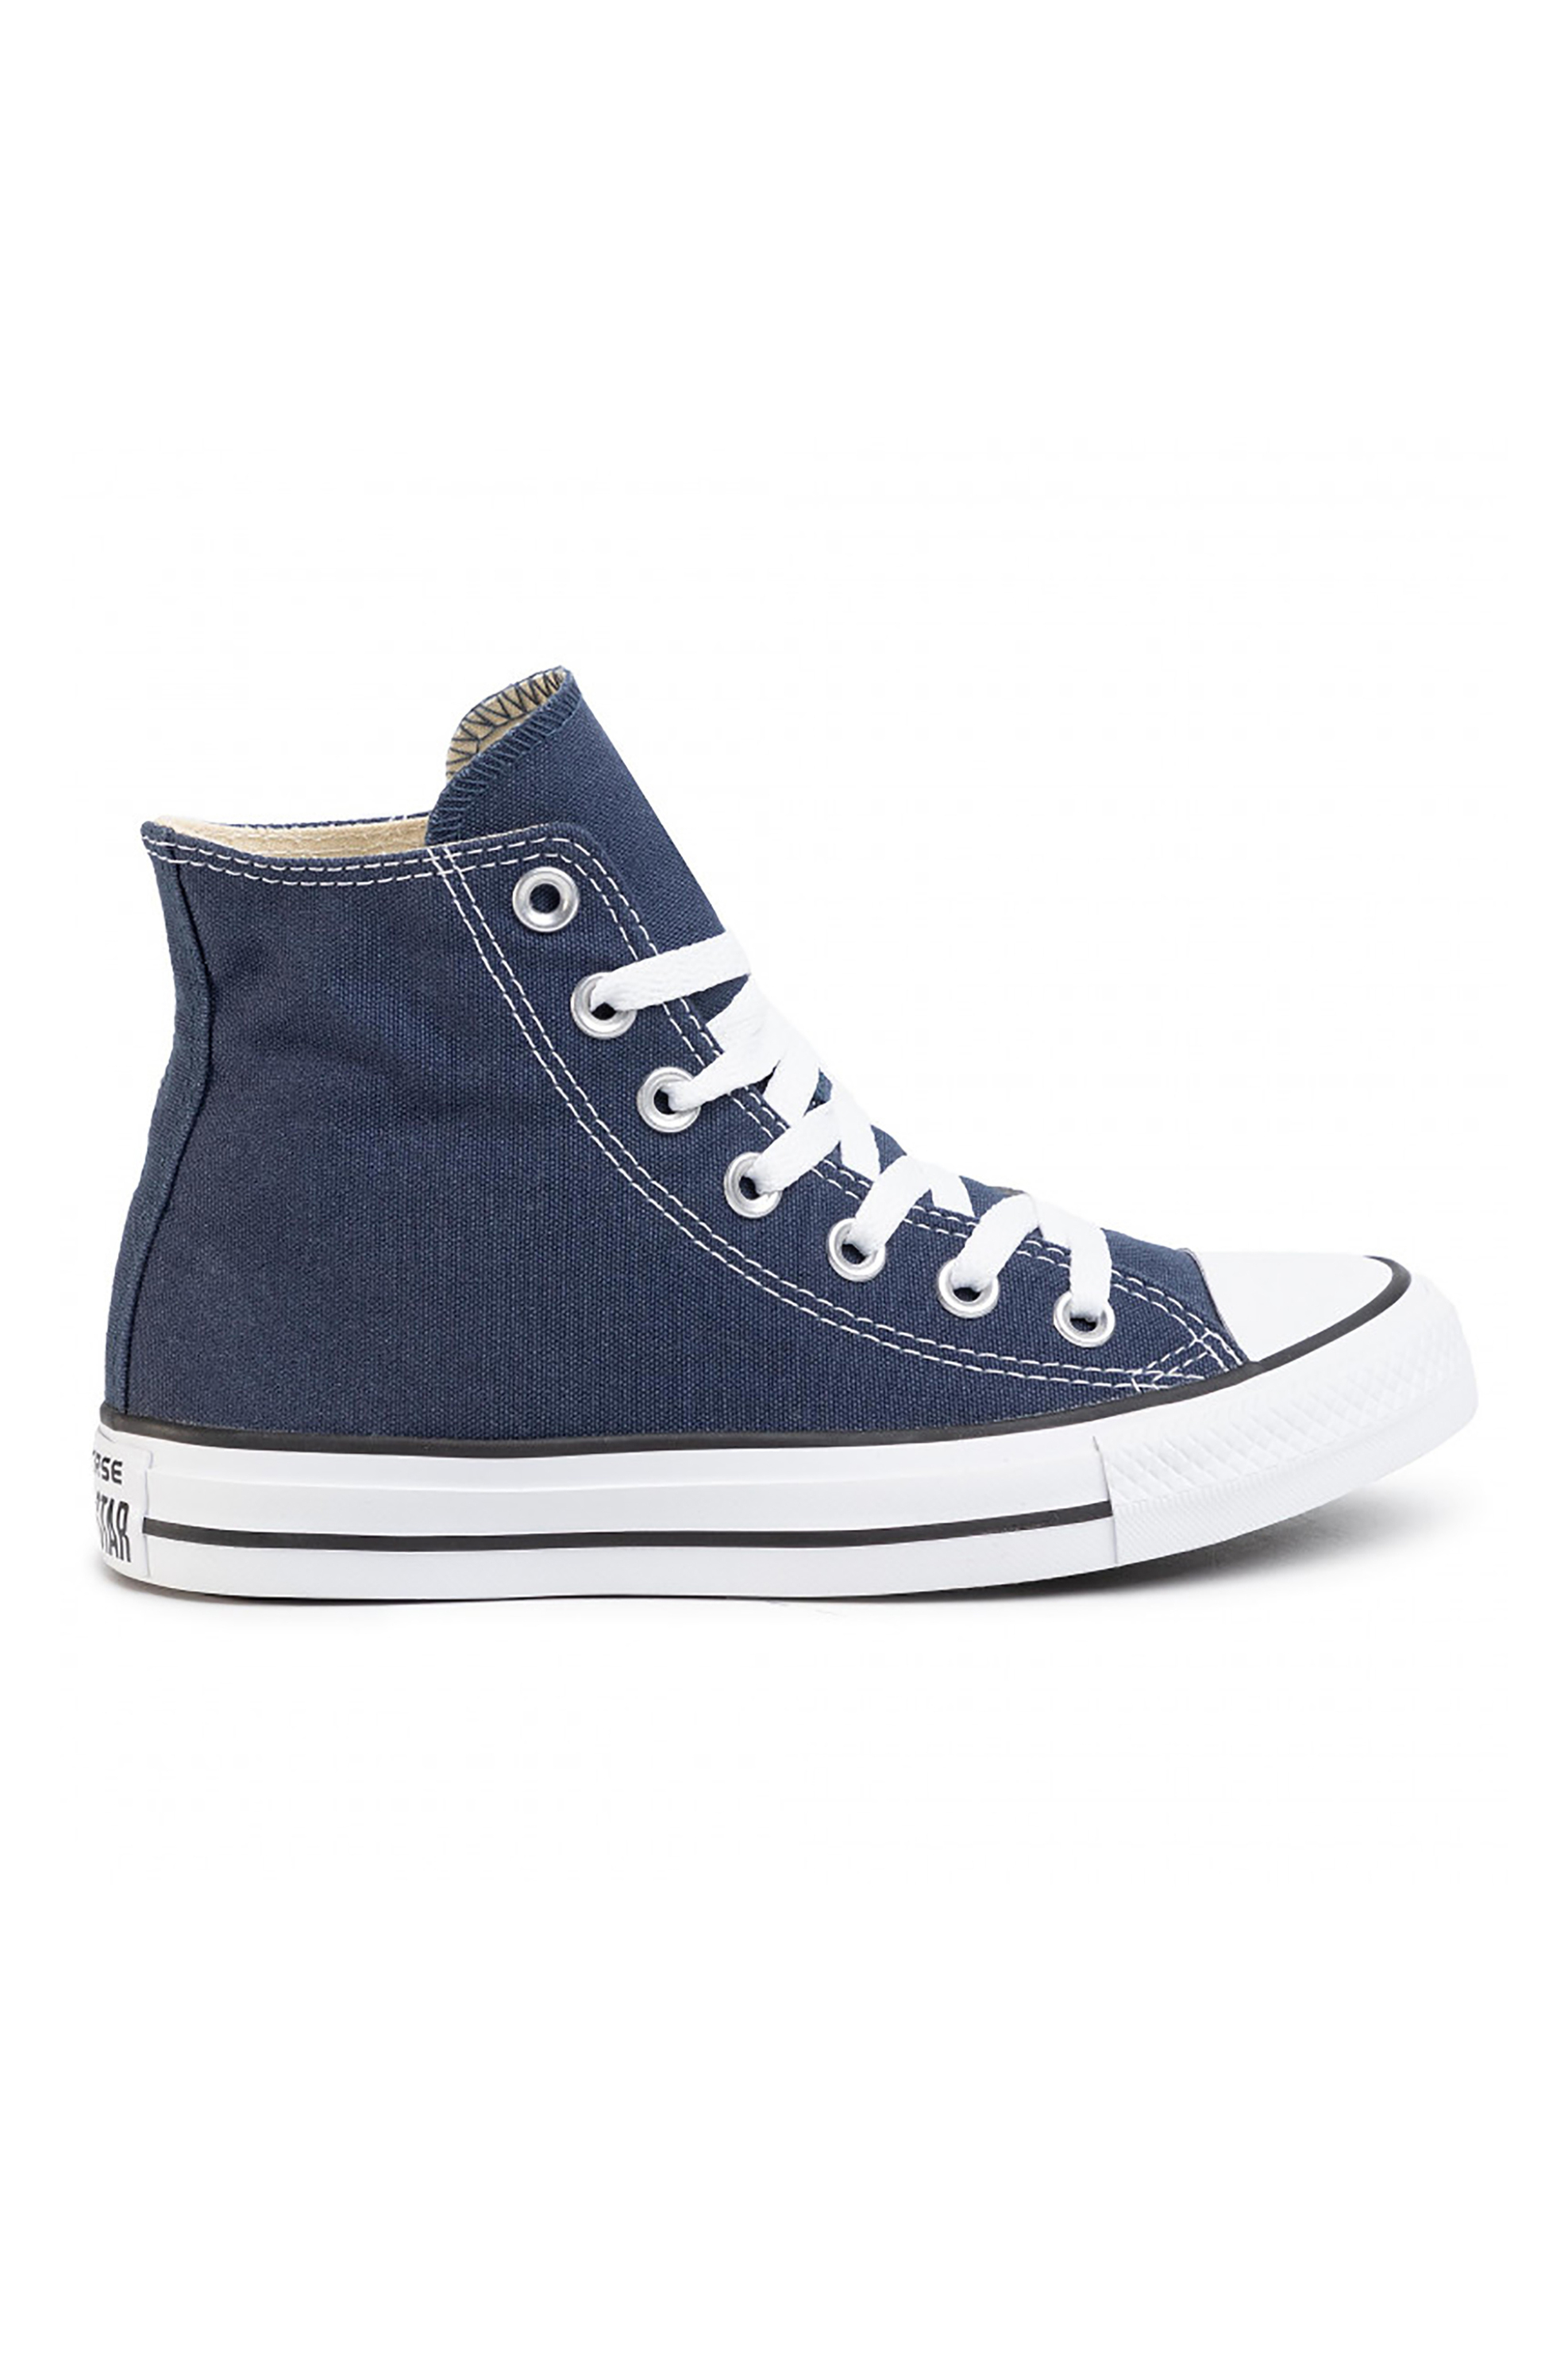 Άνδρας > ΠΑΠΟΥΤΣΙΑ > Trainers & Sneakers Converse unisex sneakers μποτάκια "All Star High'' - M9622C Μπλε Σκούρο